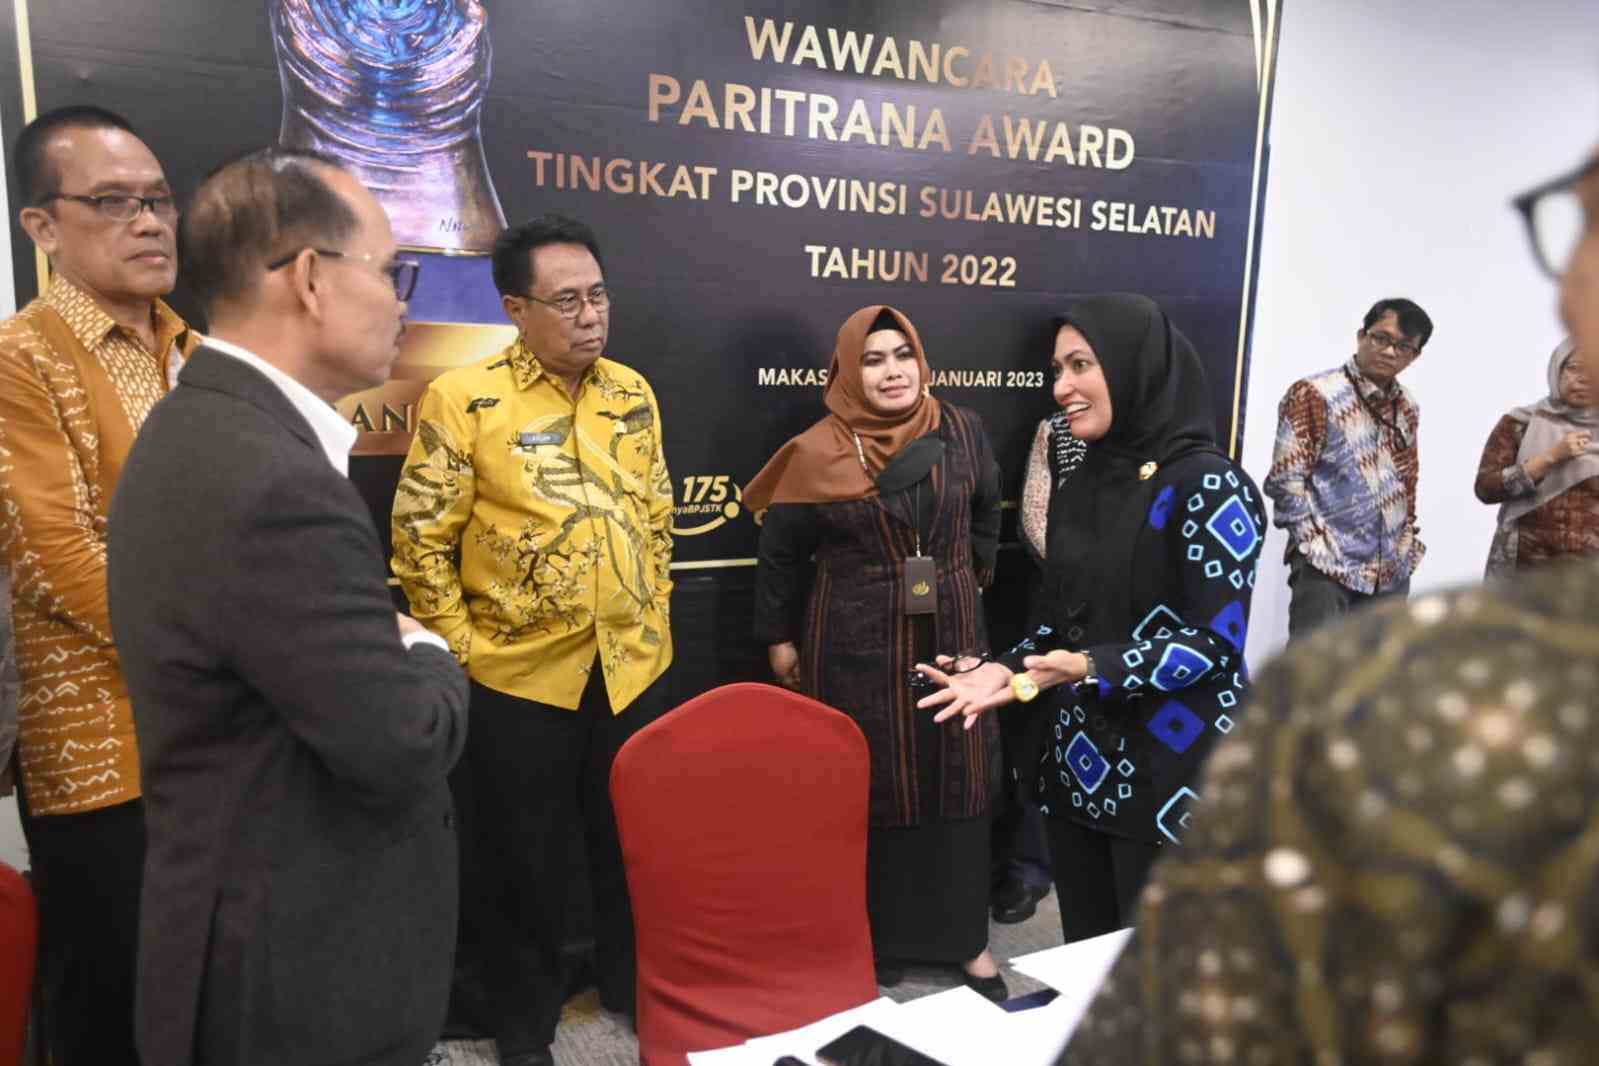 Bupati Lutra Indah saat hadir dikegiatan wawancara Panitia Paritrana Award Tingkat Provinsi Sulawesi Selatan. (Dok/Pemkab Lutra).